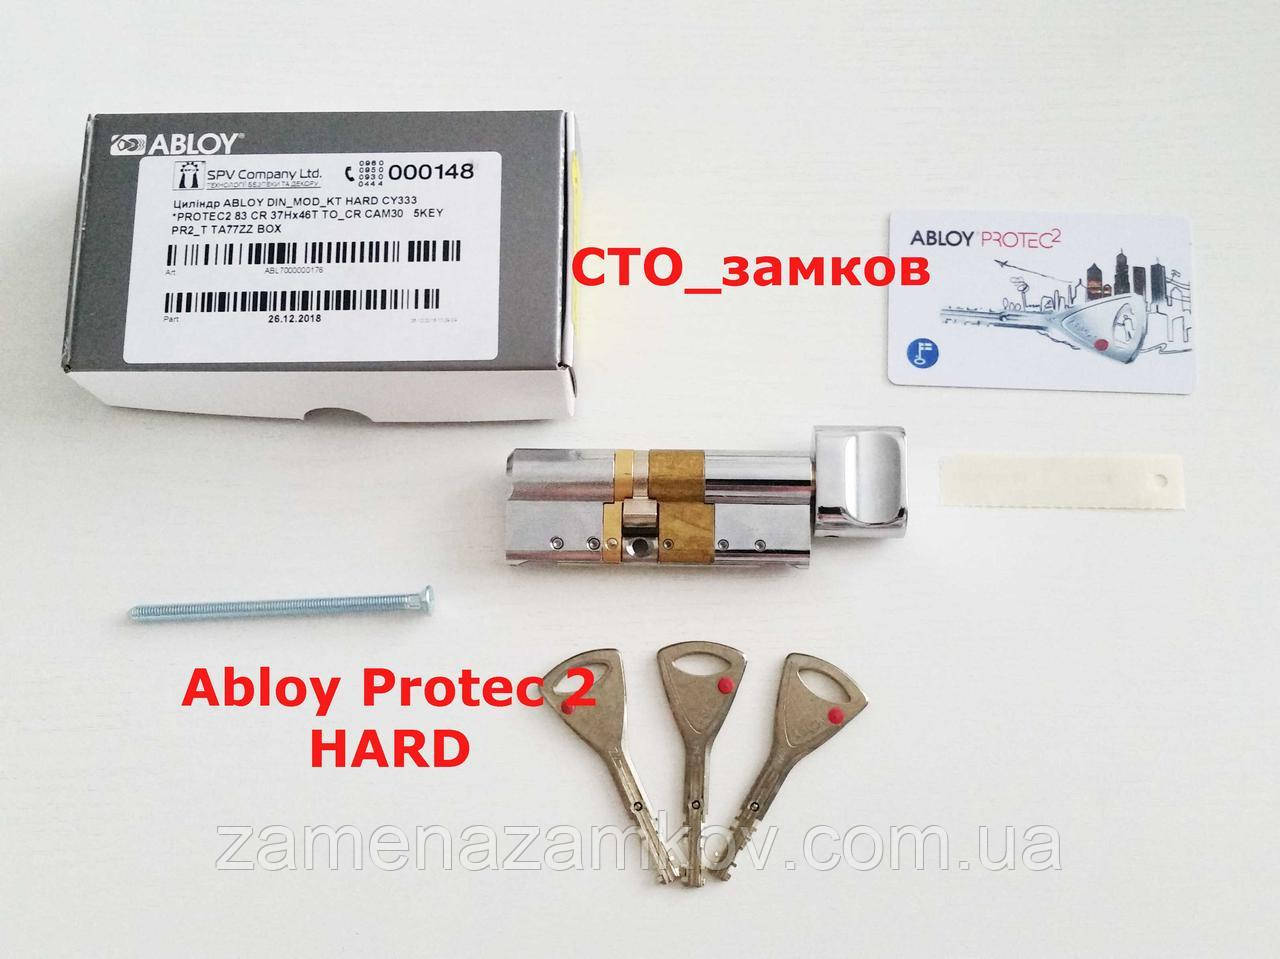 Abloy Protec2 HARD 73 мм 42Нx31 ключ/тумблер хром циліндровий механізм Київ